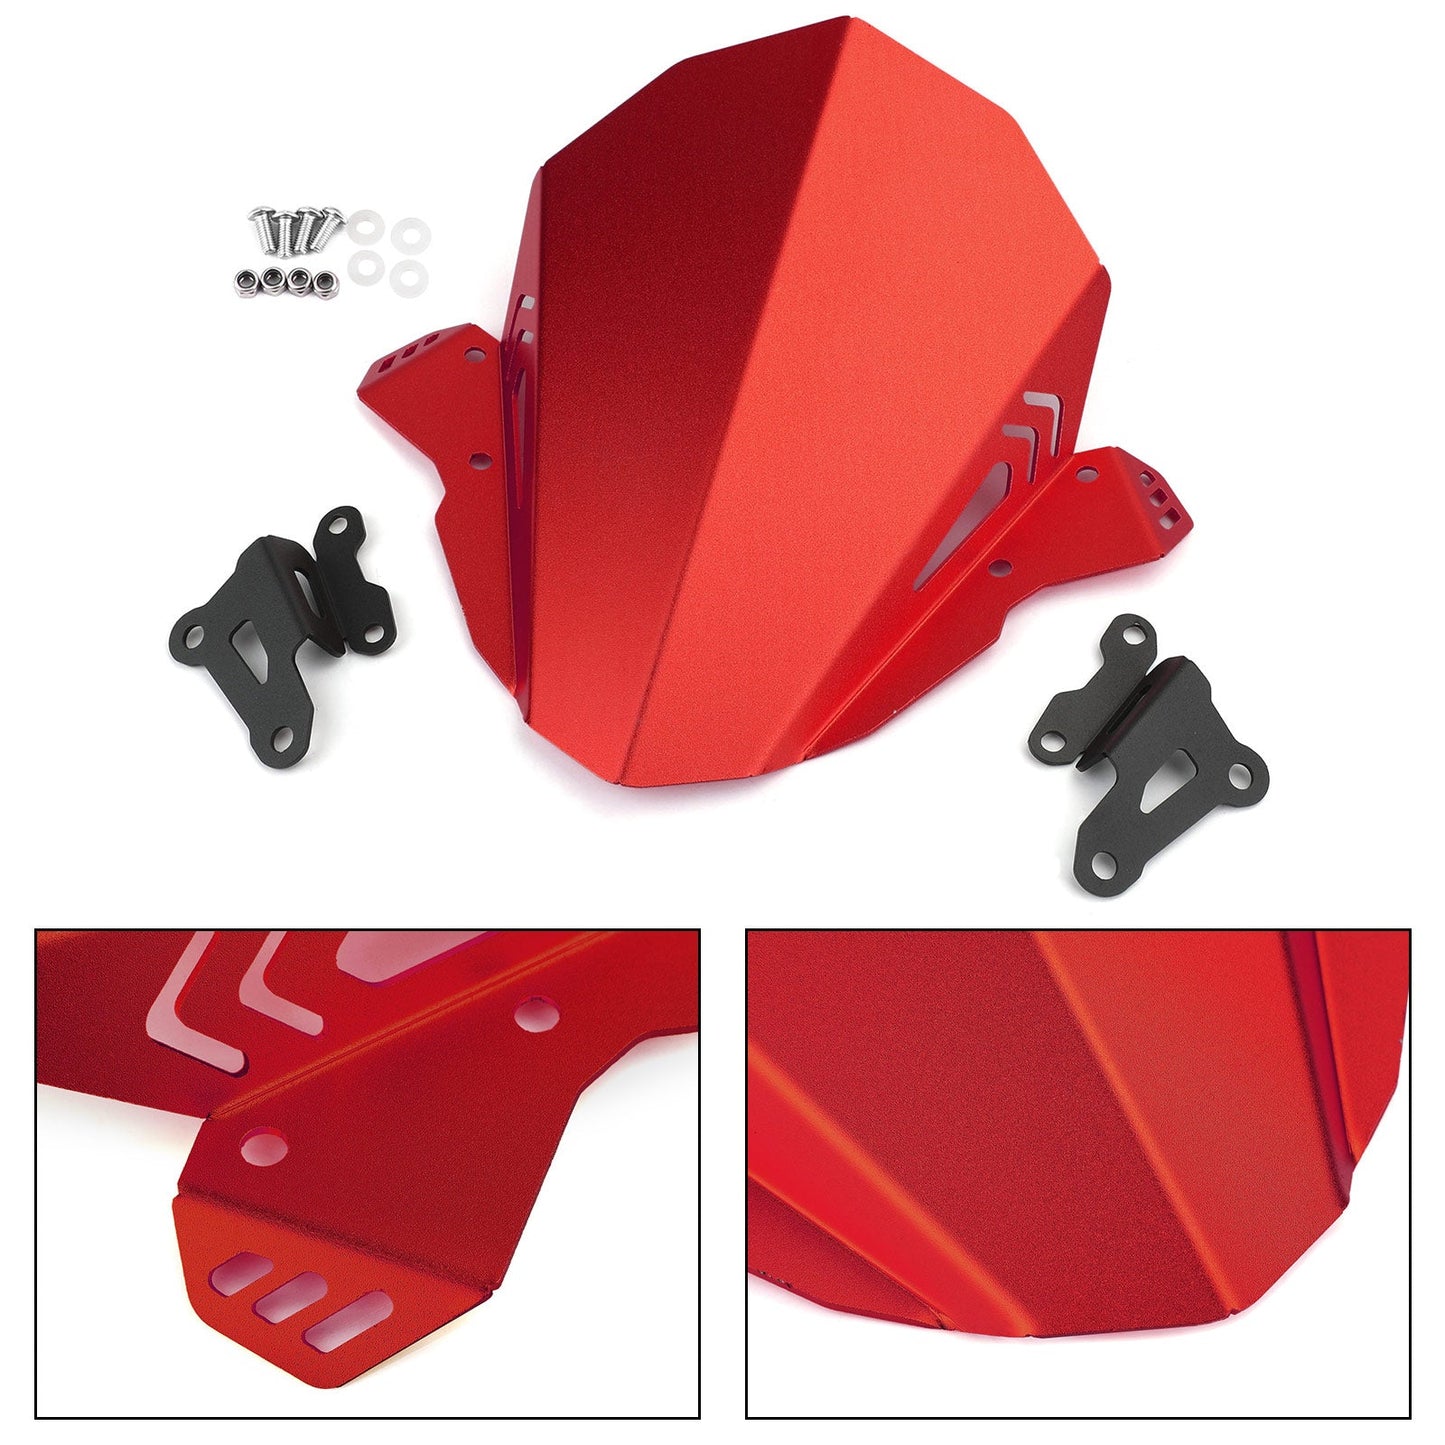 Windscreen Windshield Shield Protector For YAMAHA FZ 09 MT 09 2019-2020